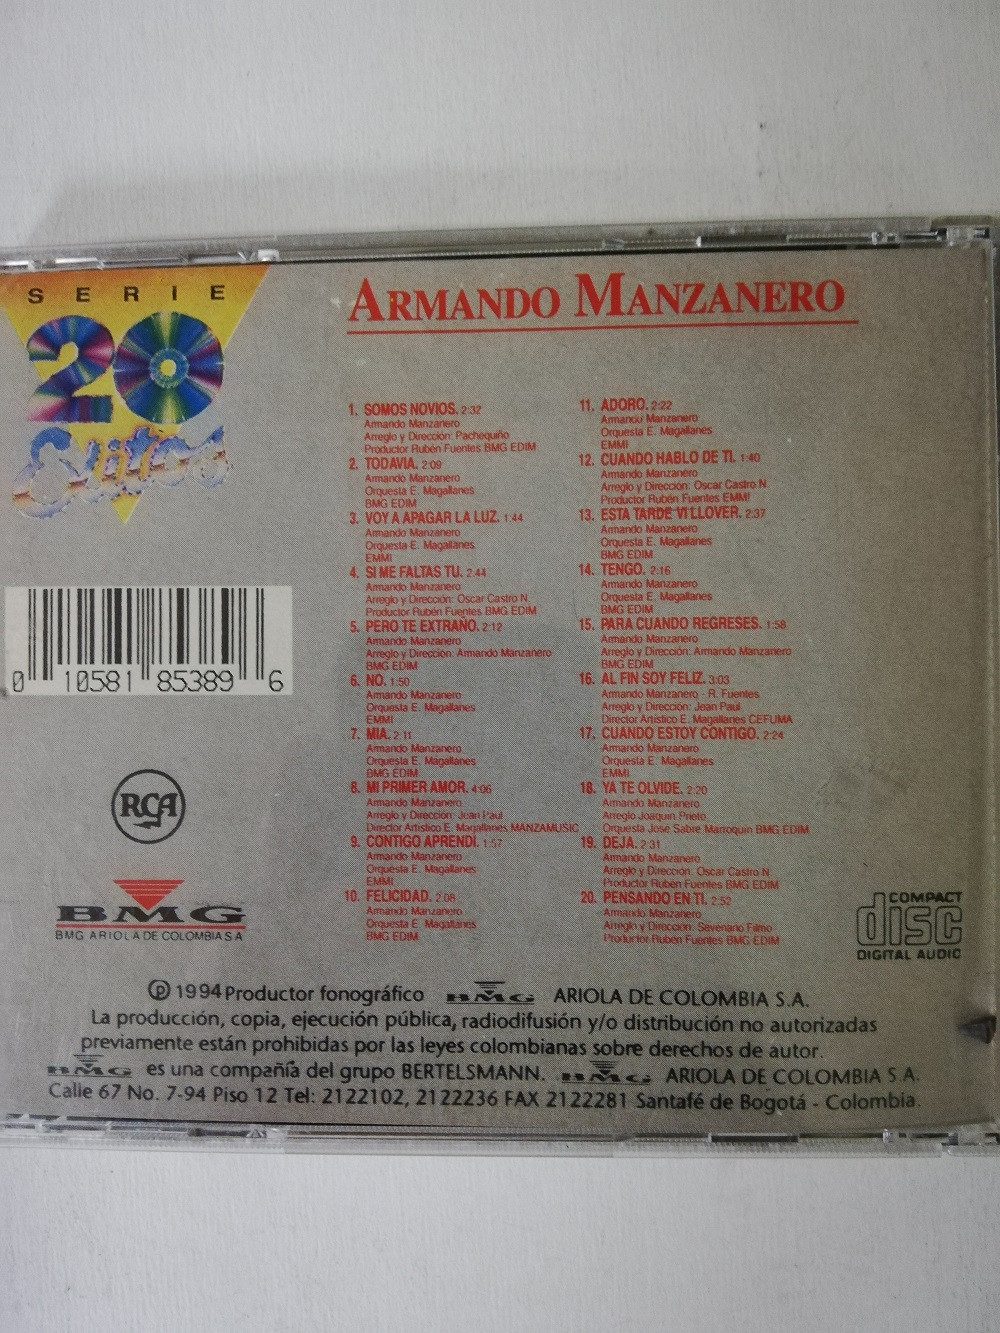 Imagen CD ARMANDO MANZANERO - SERIE 20 EXITOS 2